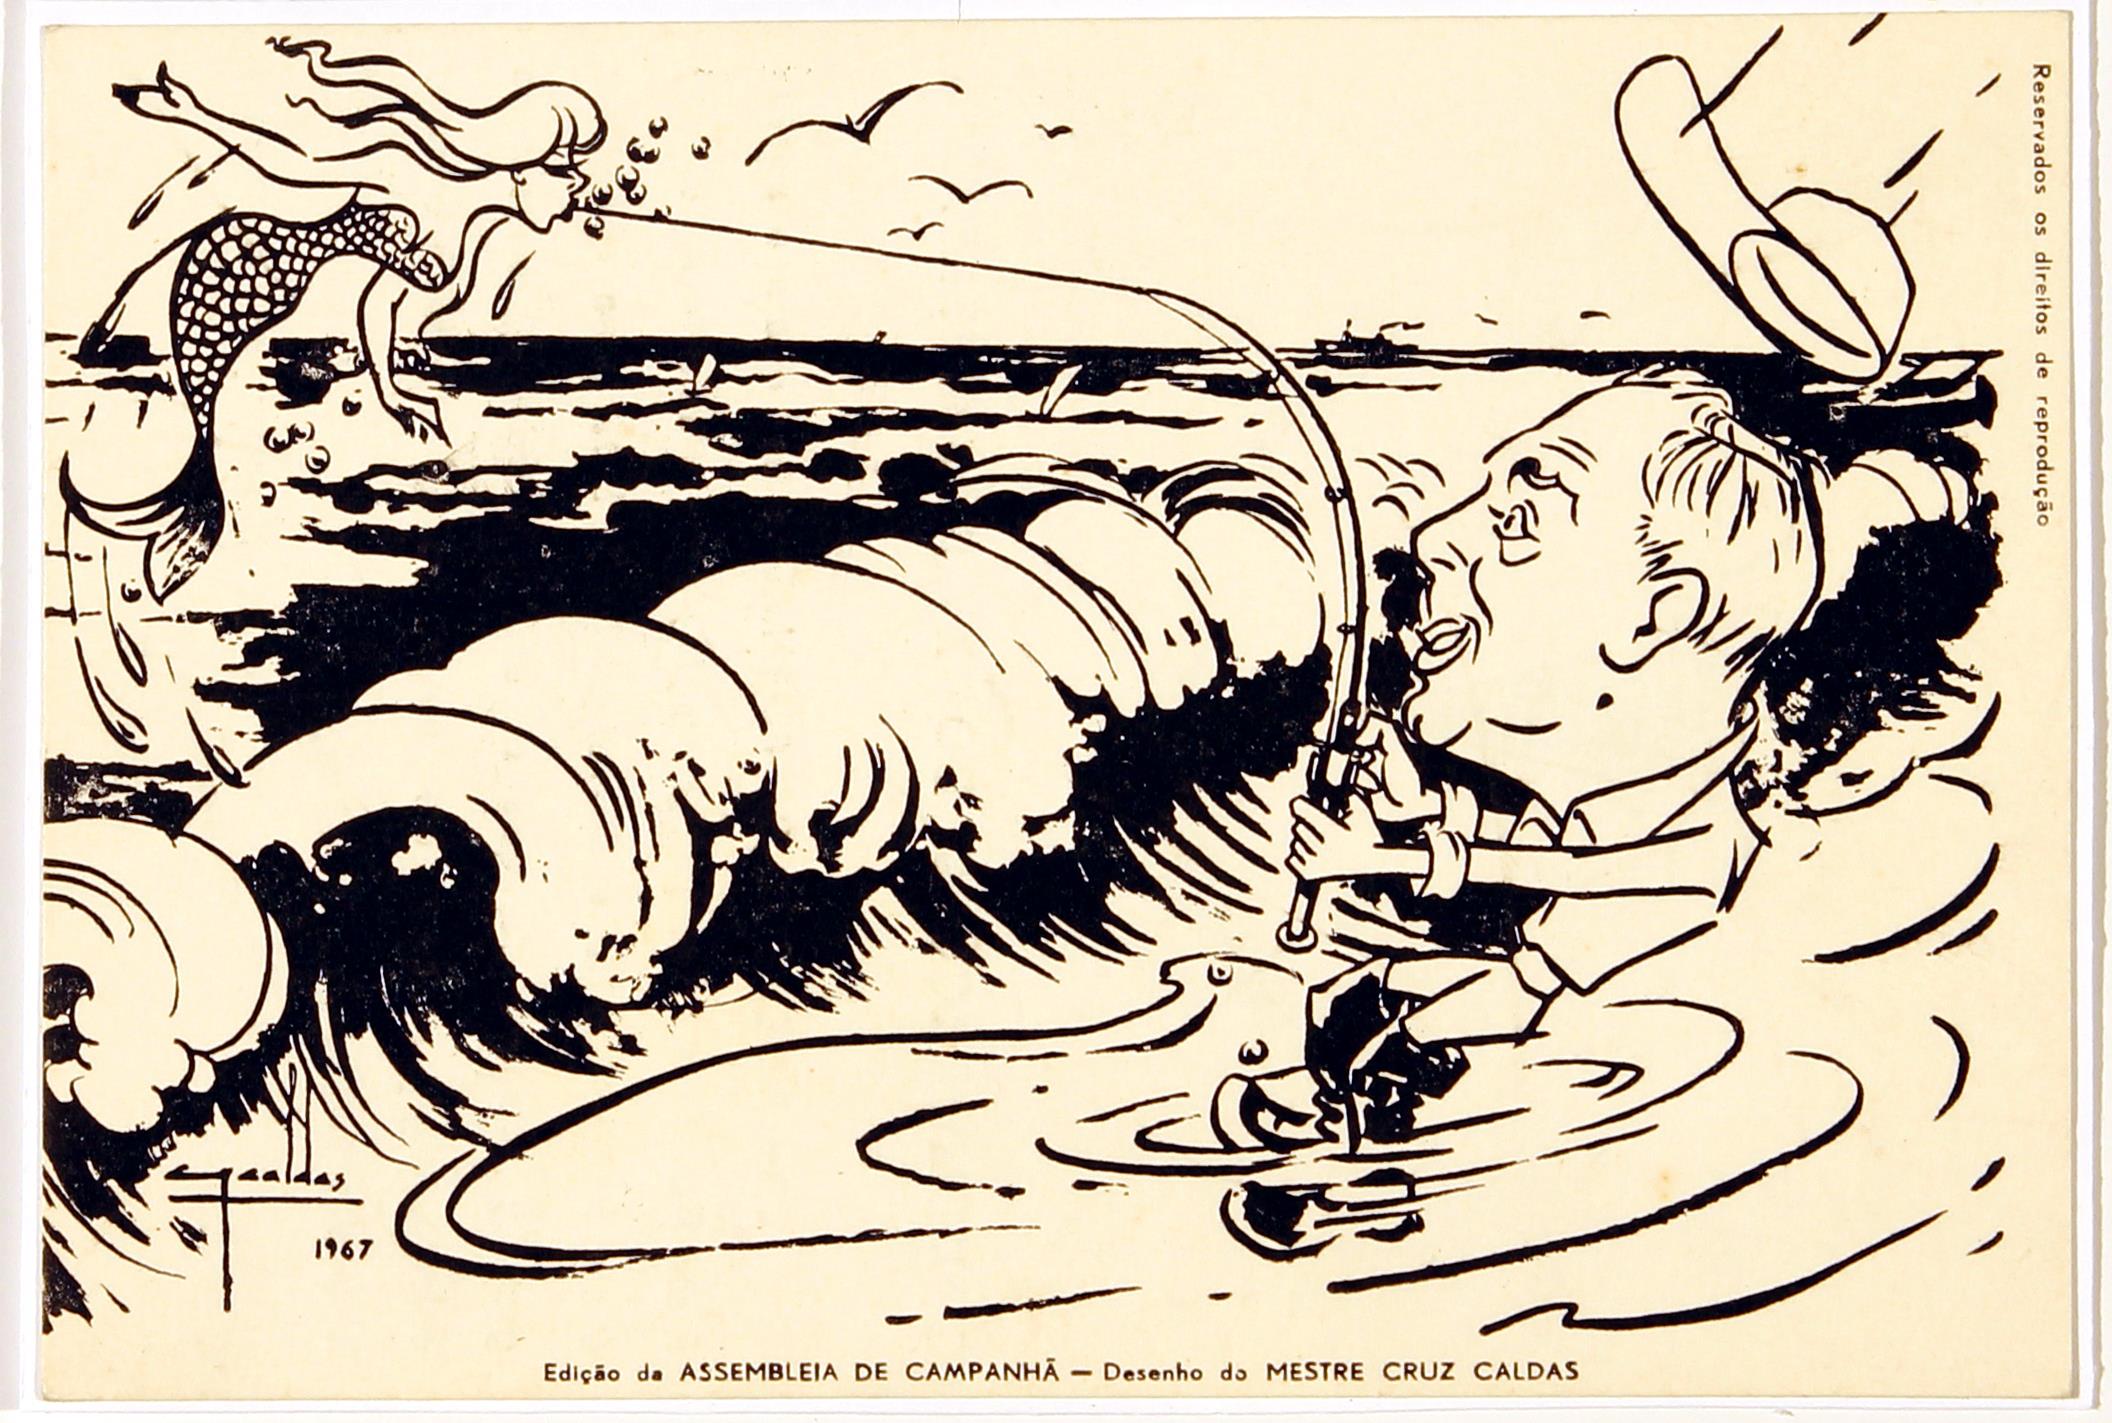 [Assembleia de Campanhã : secção de pesca : desenho humorístico do Juiz António Quintela a pescar uma sereia]